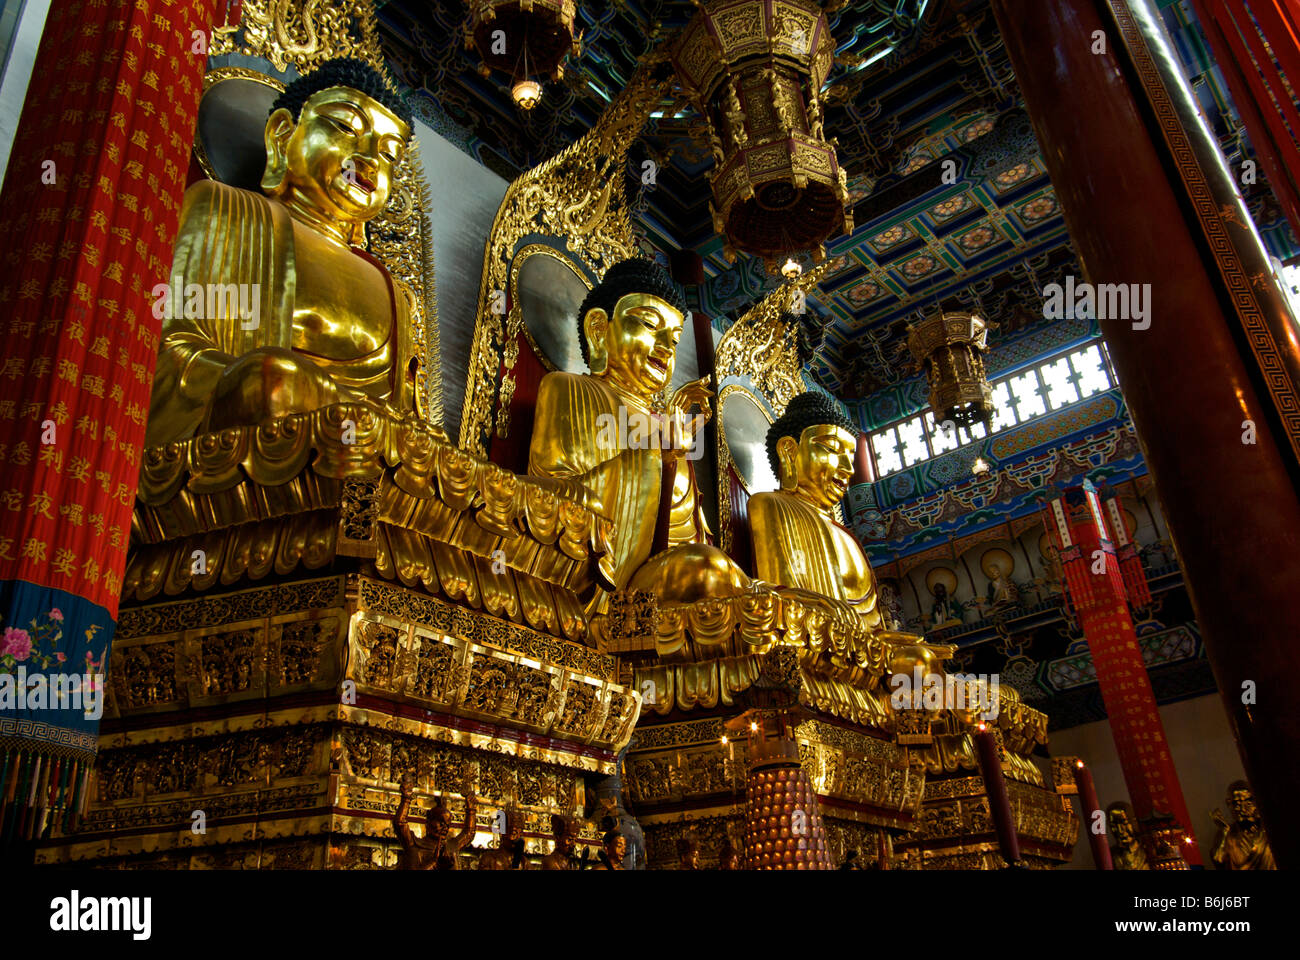 Drei reich verzierte Gold Buddhas vertreten dieselbe Person in Vergangenheit Gegenwart Zukunft bei Tang Dynastie Zhenjiang buddhistischer Tempel Stockfoto